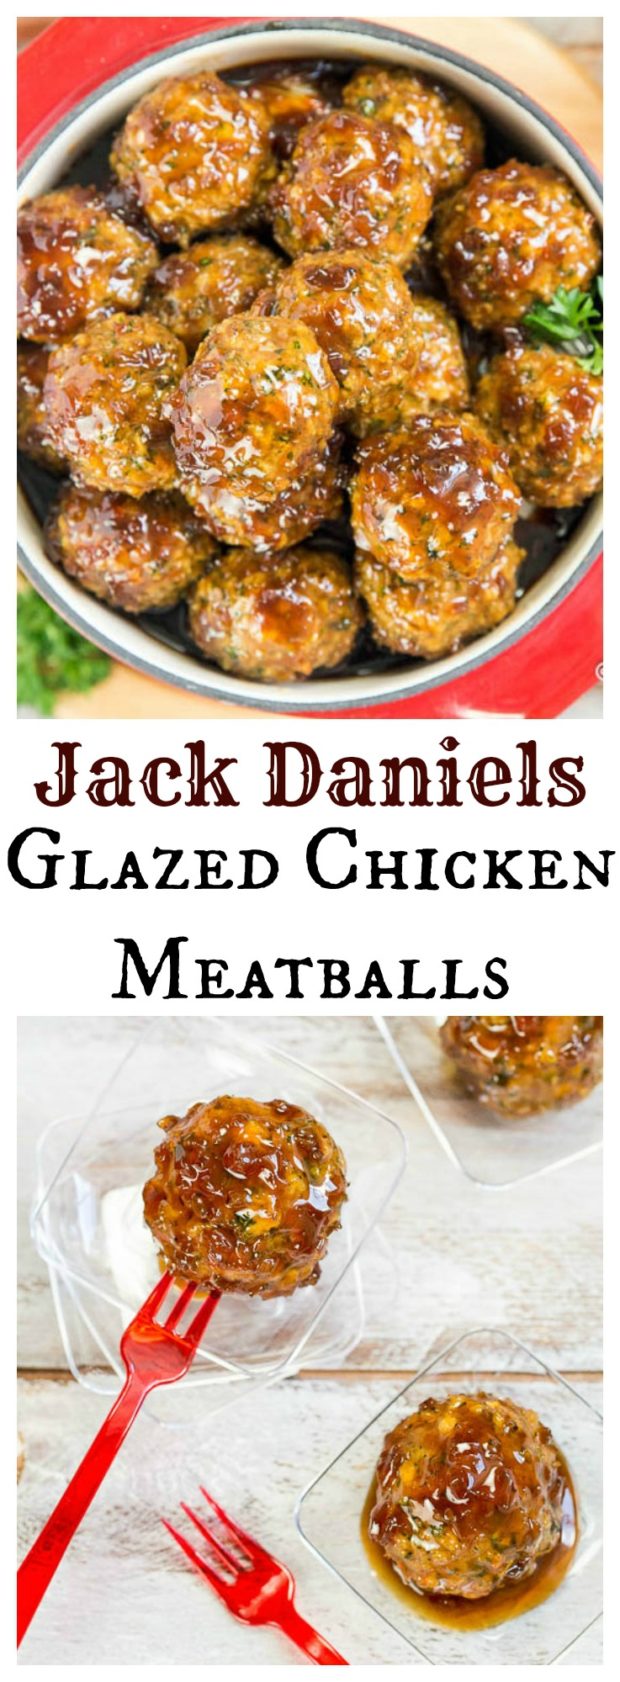 Jack Daniels Glazed Chicken Meatballs